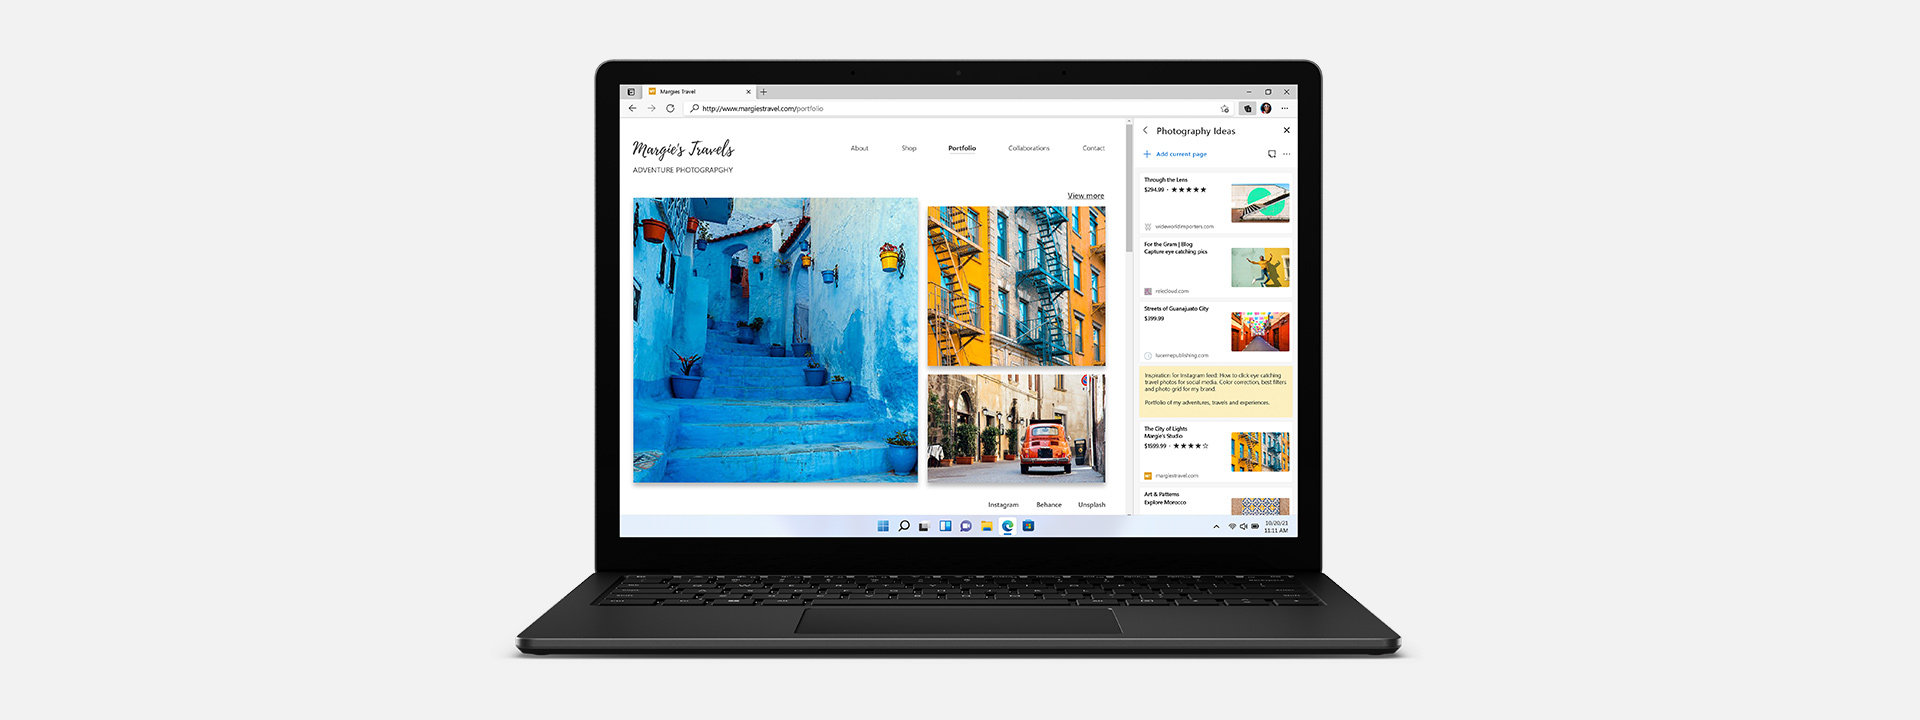 جهاز Surface Laptop 4 معروض عليه صورة فوتوغرافية لرحلة مغامرات على متصفح Edge.